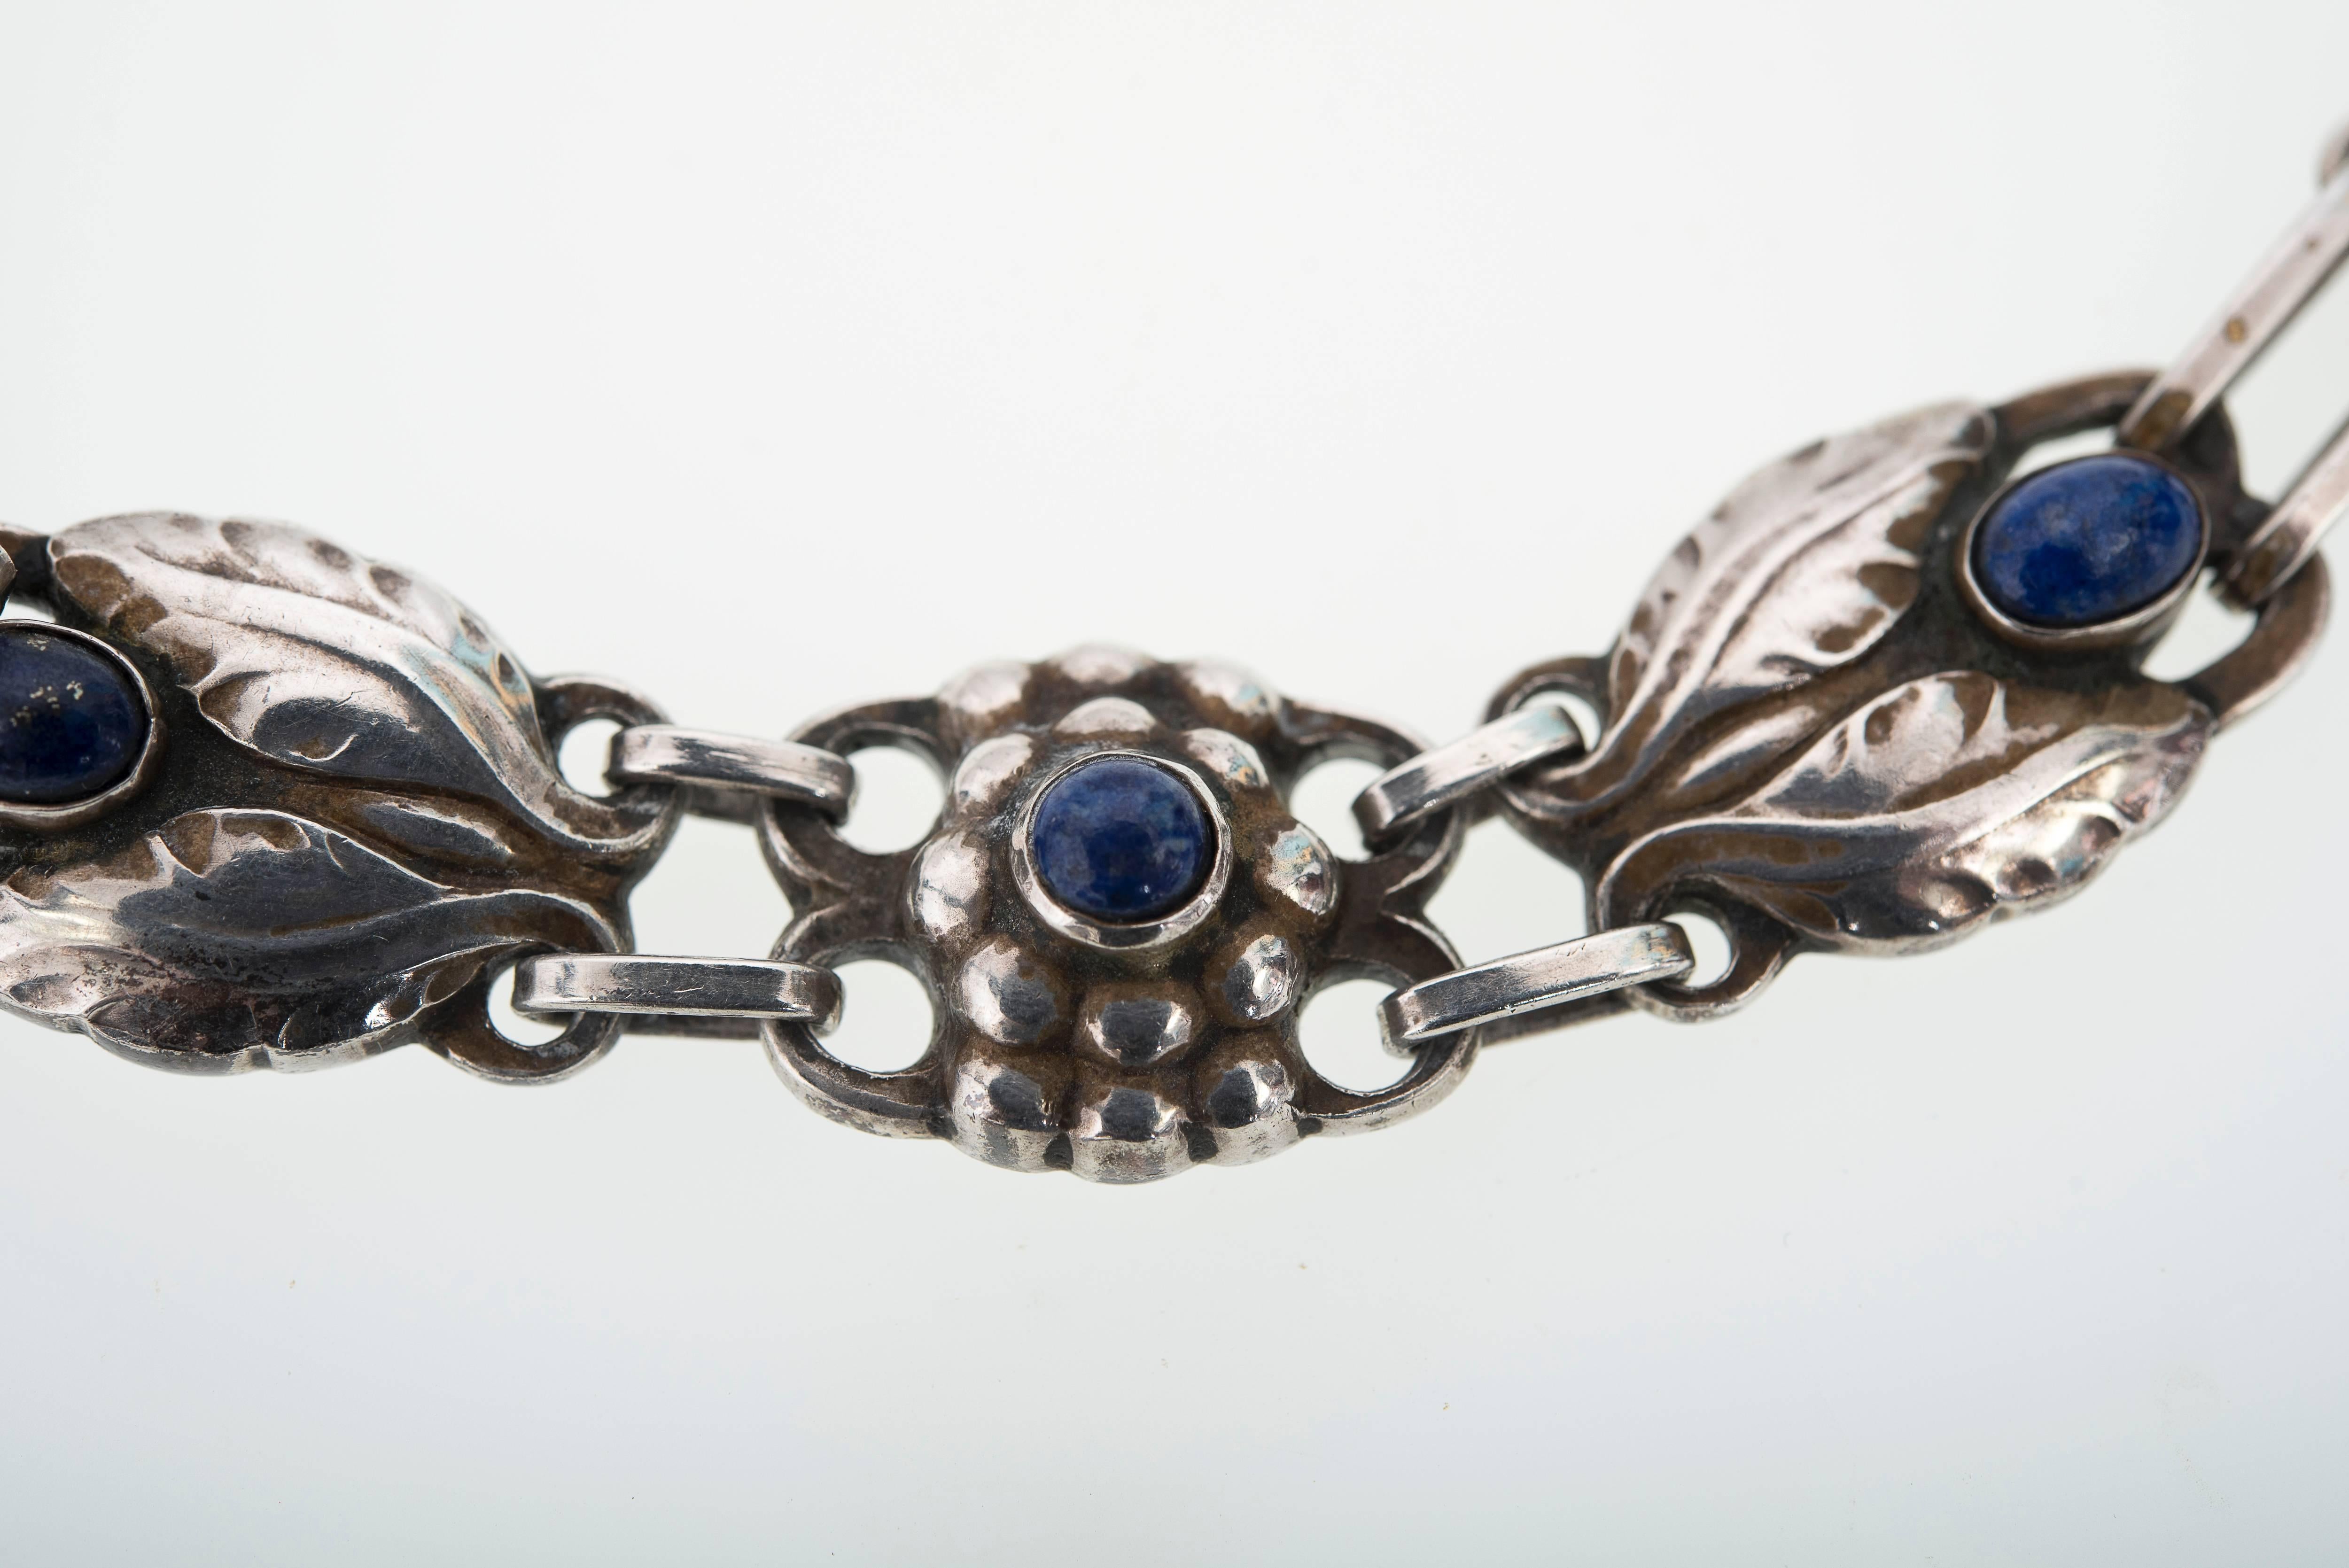 Exquisite Georg Jensen Art Nouveau necklace design #1. (1915 - 1927)
Bud and foliate motifs sets with lapis lazuli cabochons
